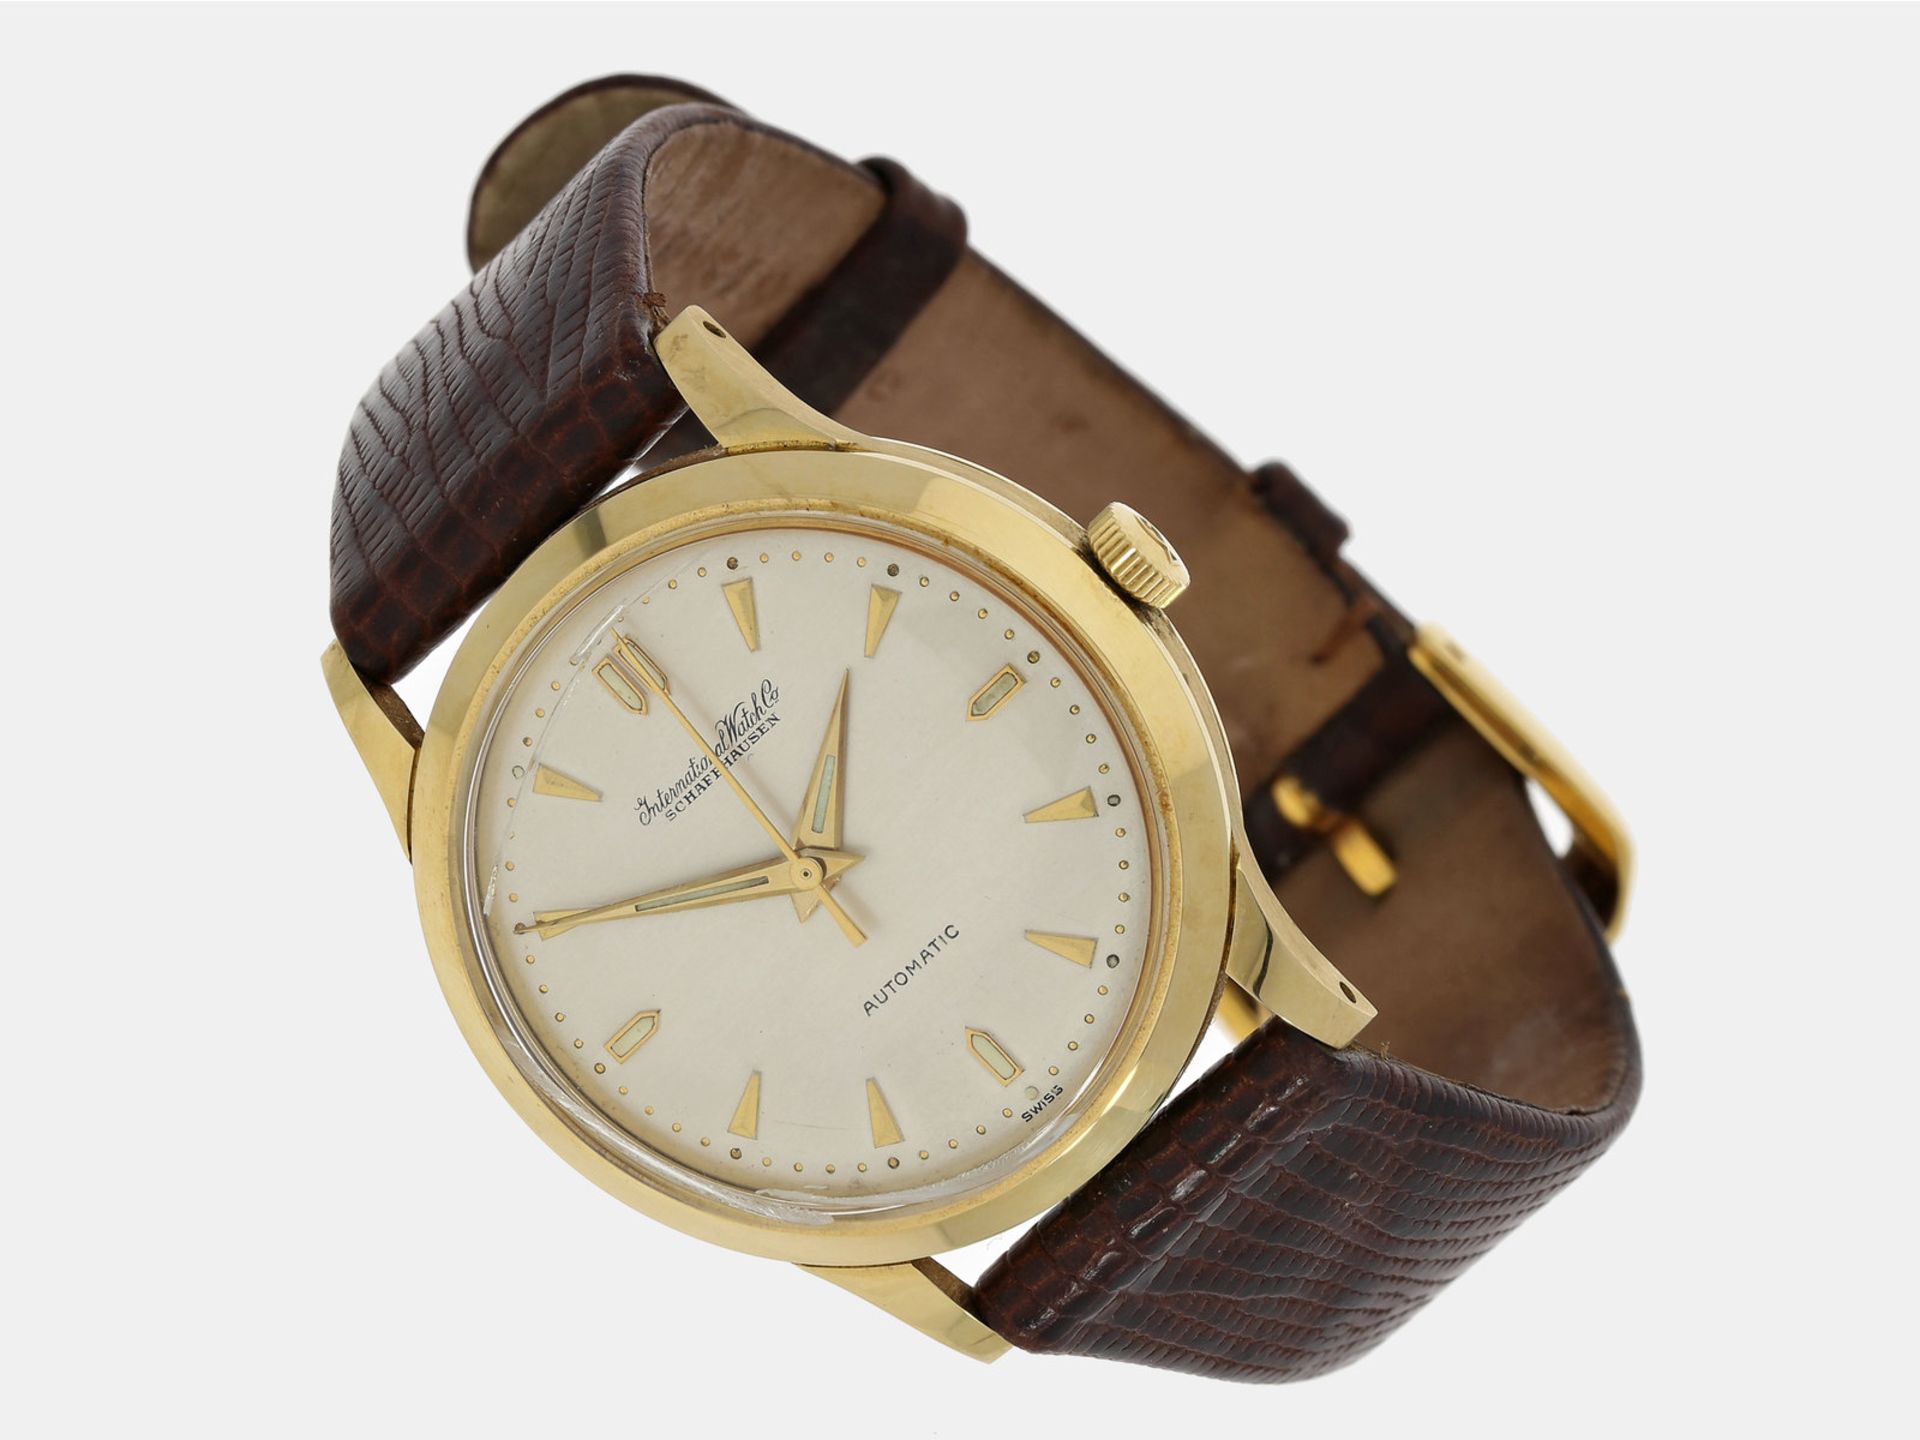 Armbanduhr: feine vintage Herrenuhr in 18K Gold, IWC Schaffhausen "Automatic" von 1953